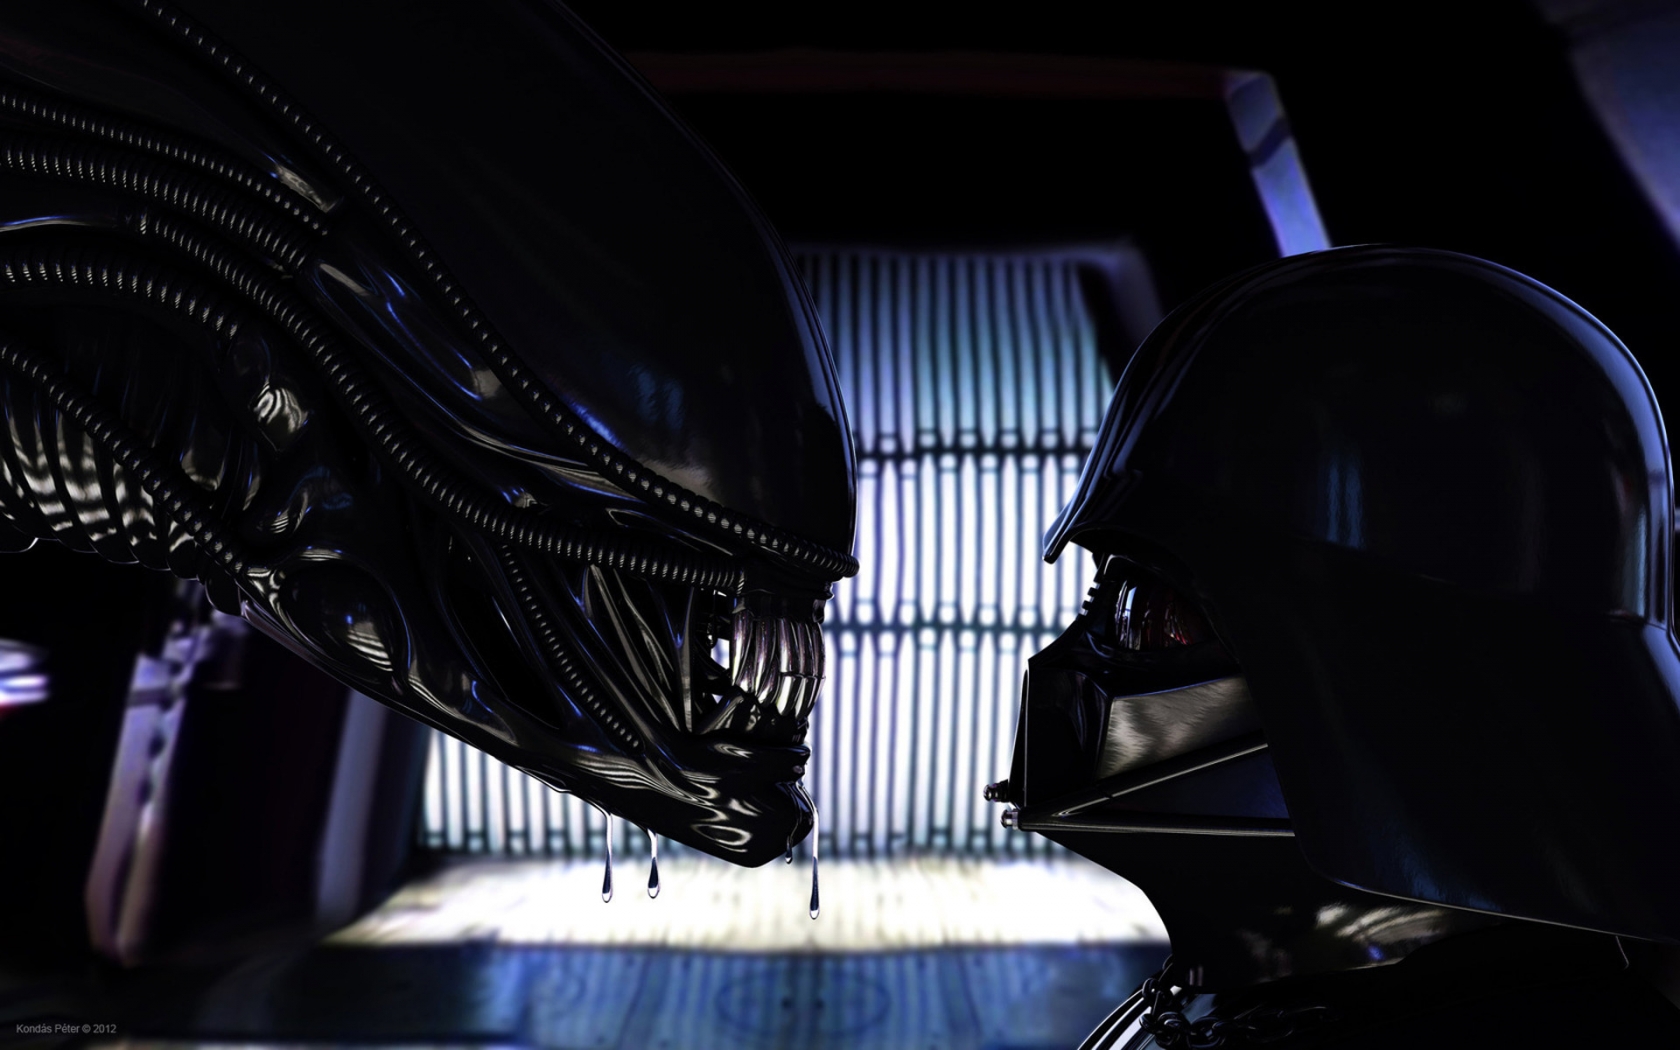 Alien vs Darth Vader for 1680 x 1050 widescreen resolution